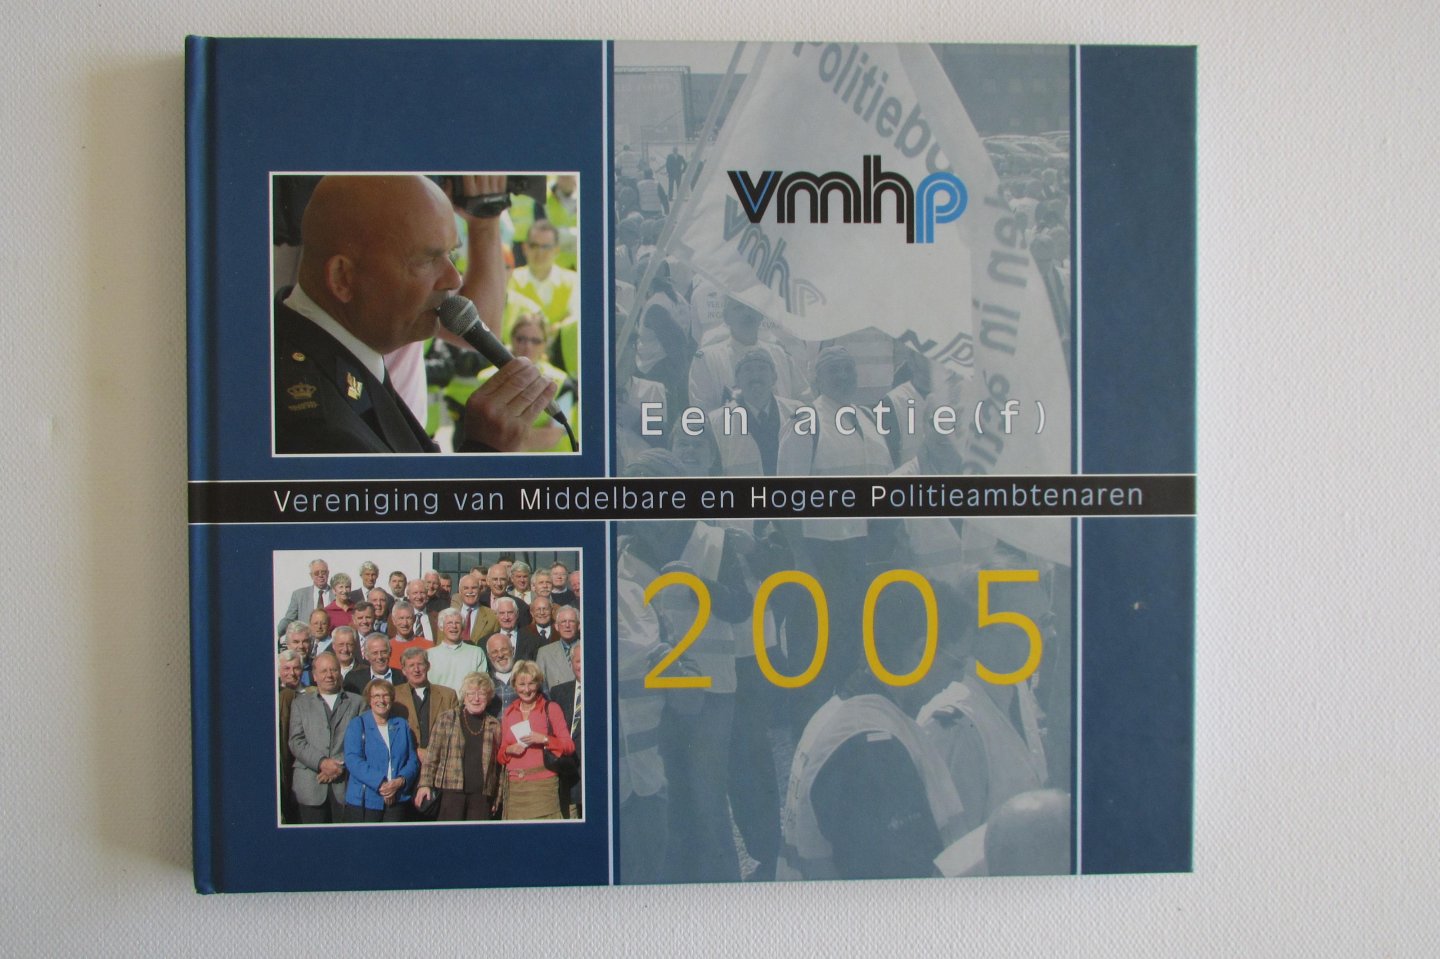 Onink Communicatie (2006) - VMHP - Een actie(f) 2005 - Vereniging van Middelbare en Hogere Politieambtenaren